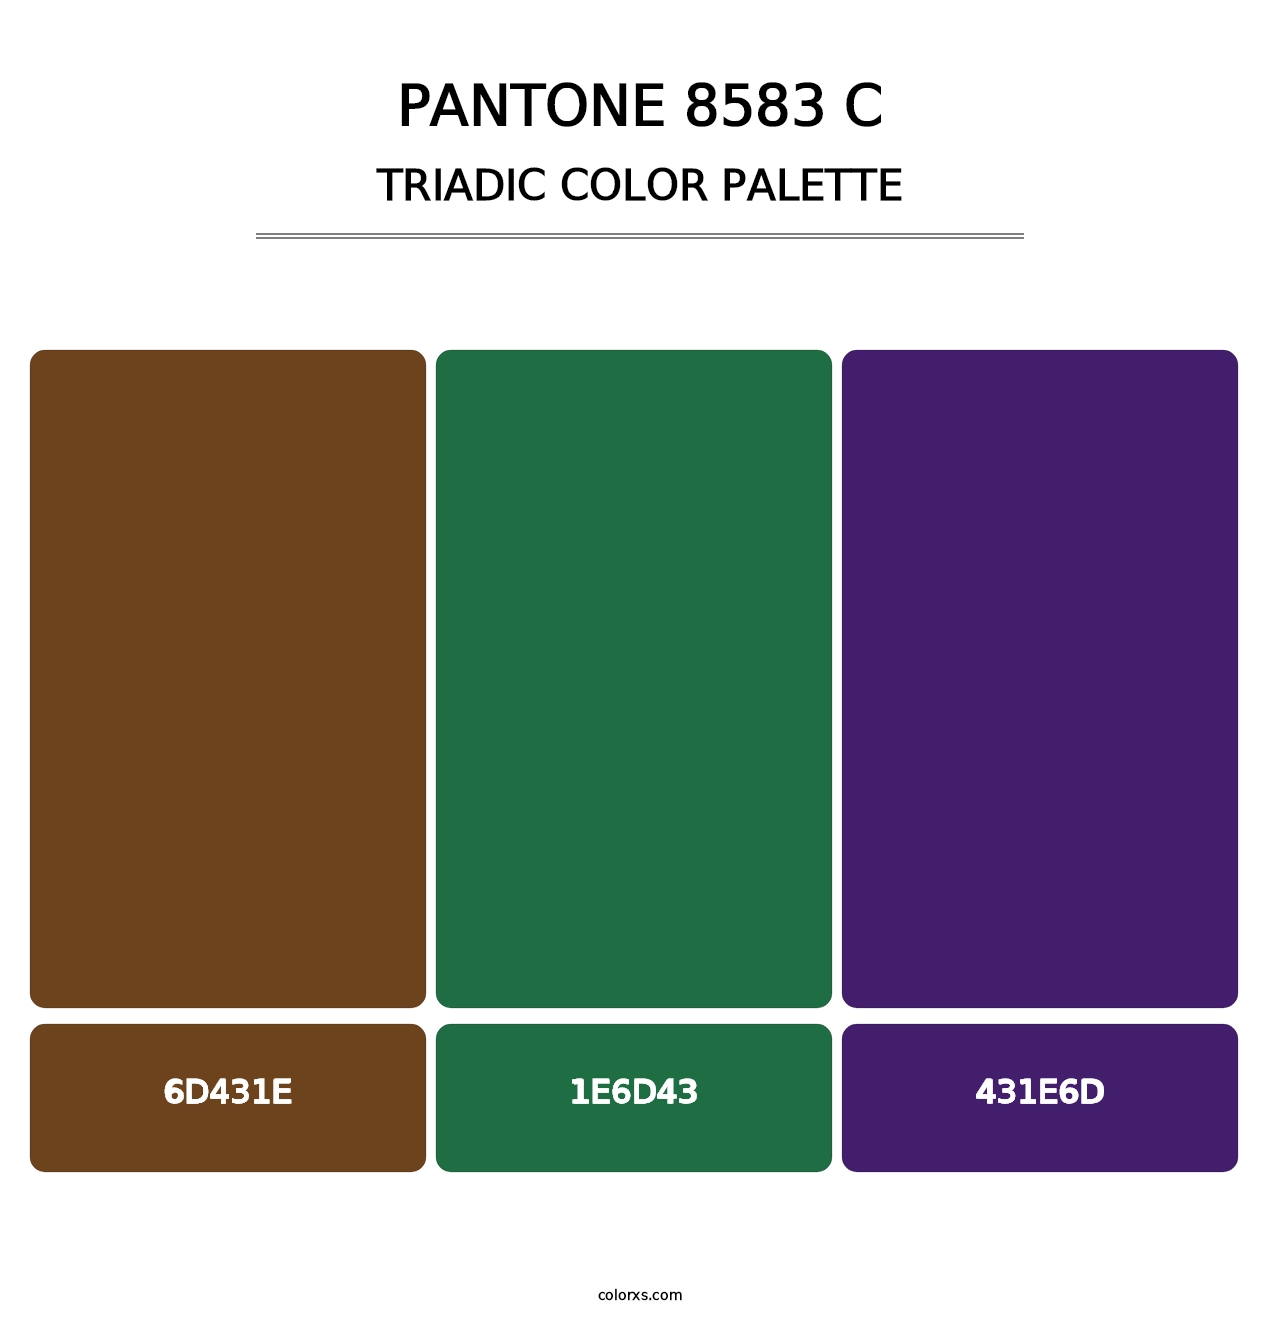 PANTONE 8583 C - Triadic Color Palette